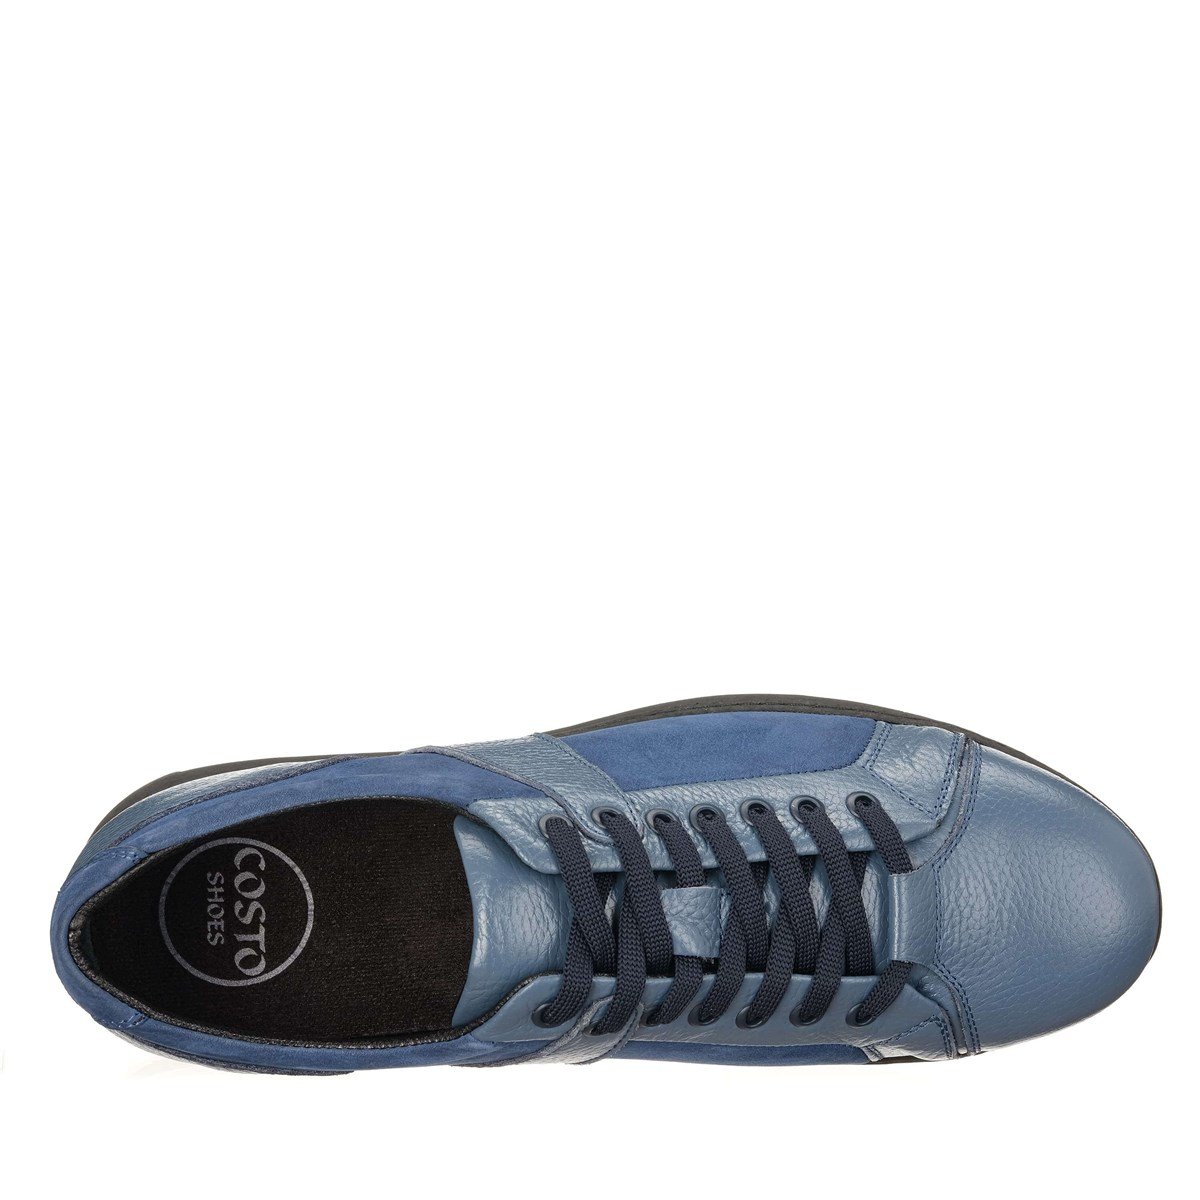 B6166 Buz Mavi Özel Seri 4 Mevsim Kauçuk Rahat Taban Büyük Numara Erkek  Ayakkabı